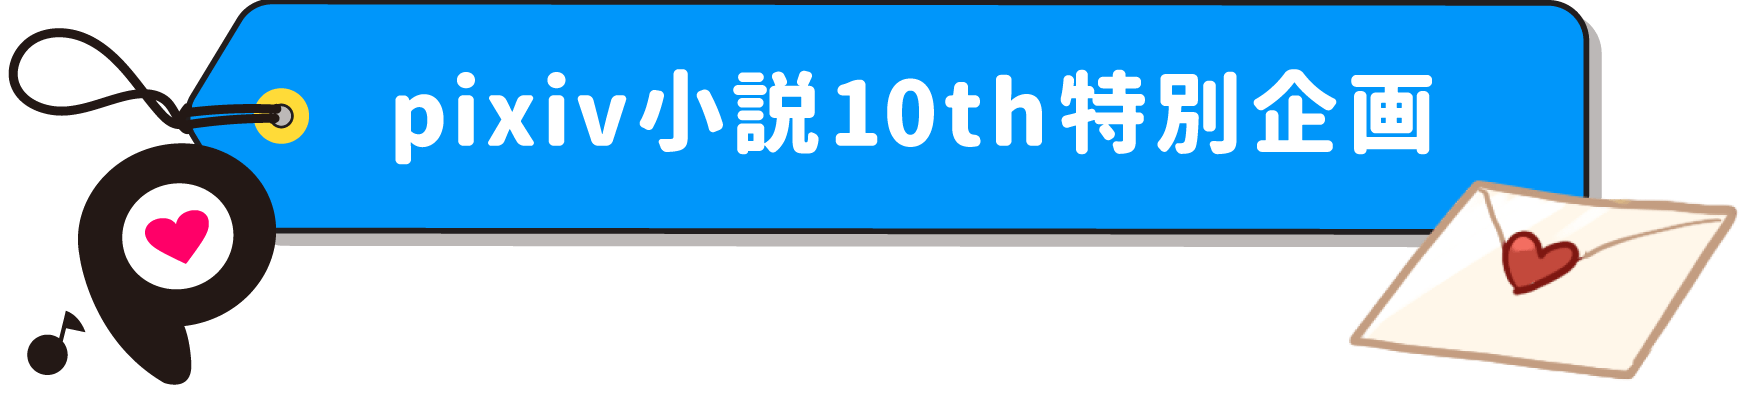 Pixiv小説10周年記念特設サイト